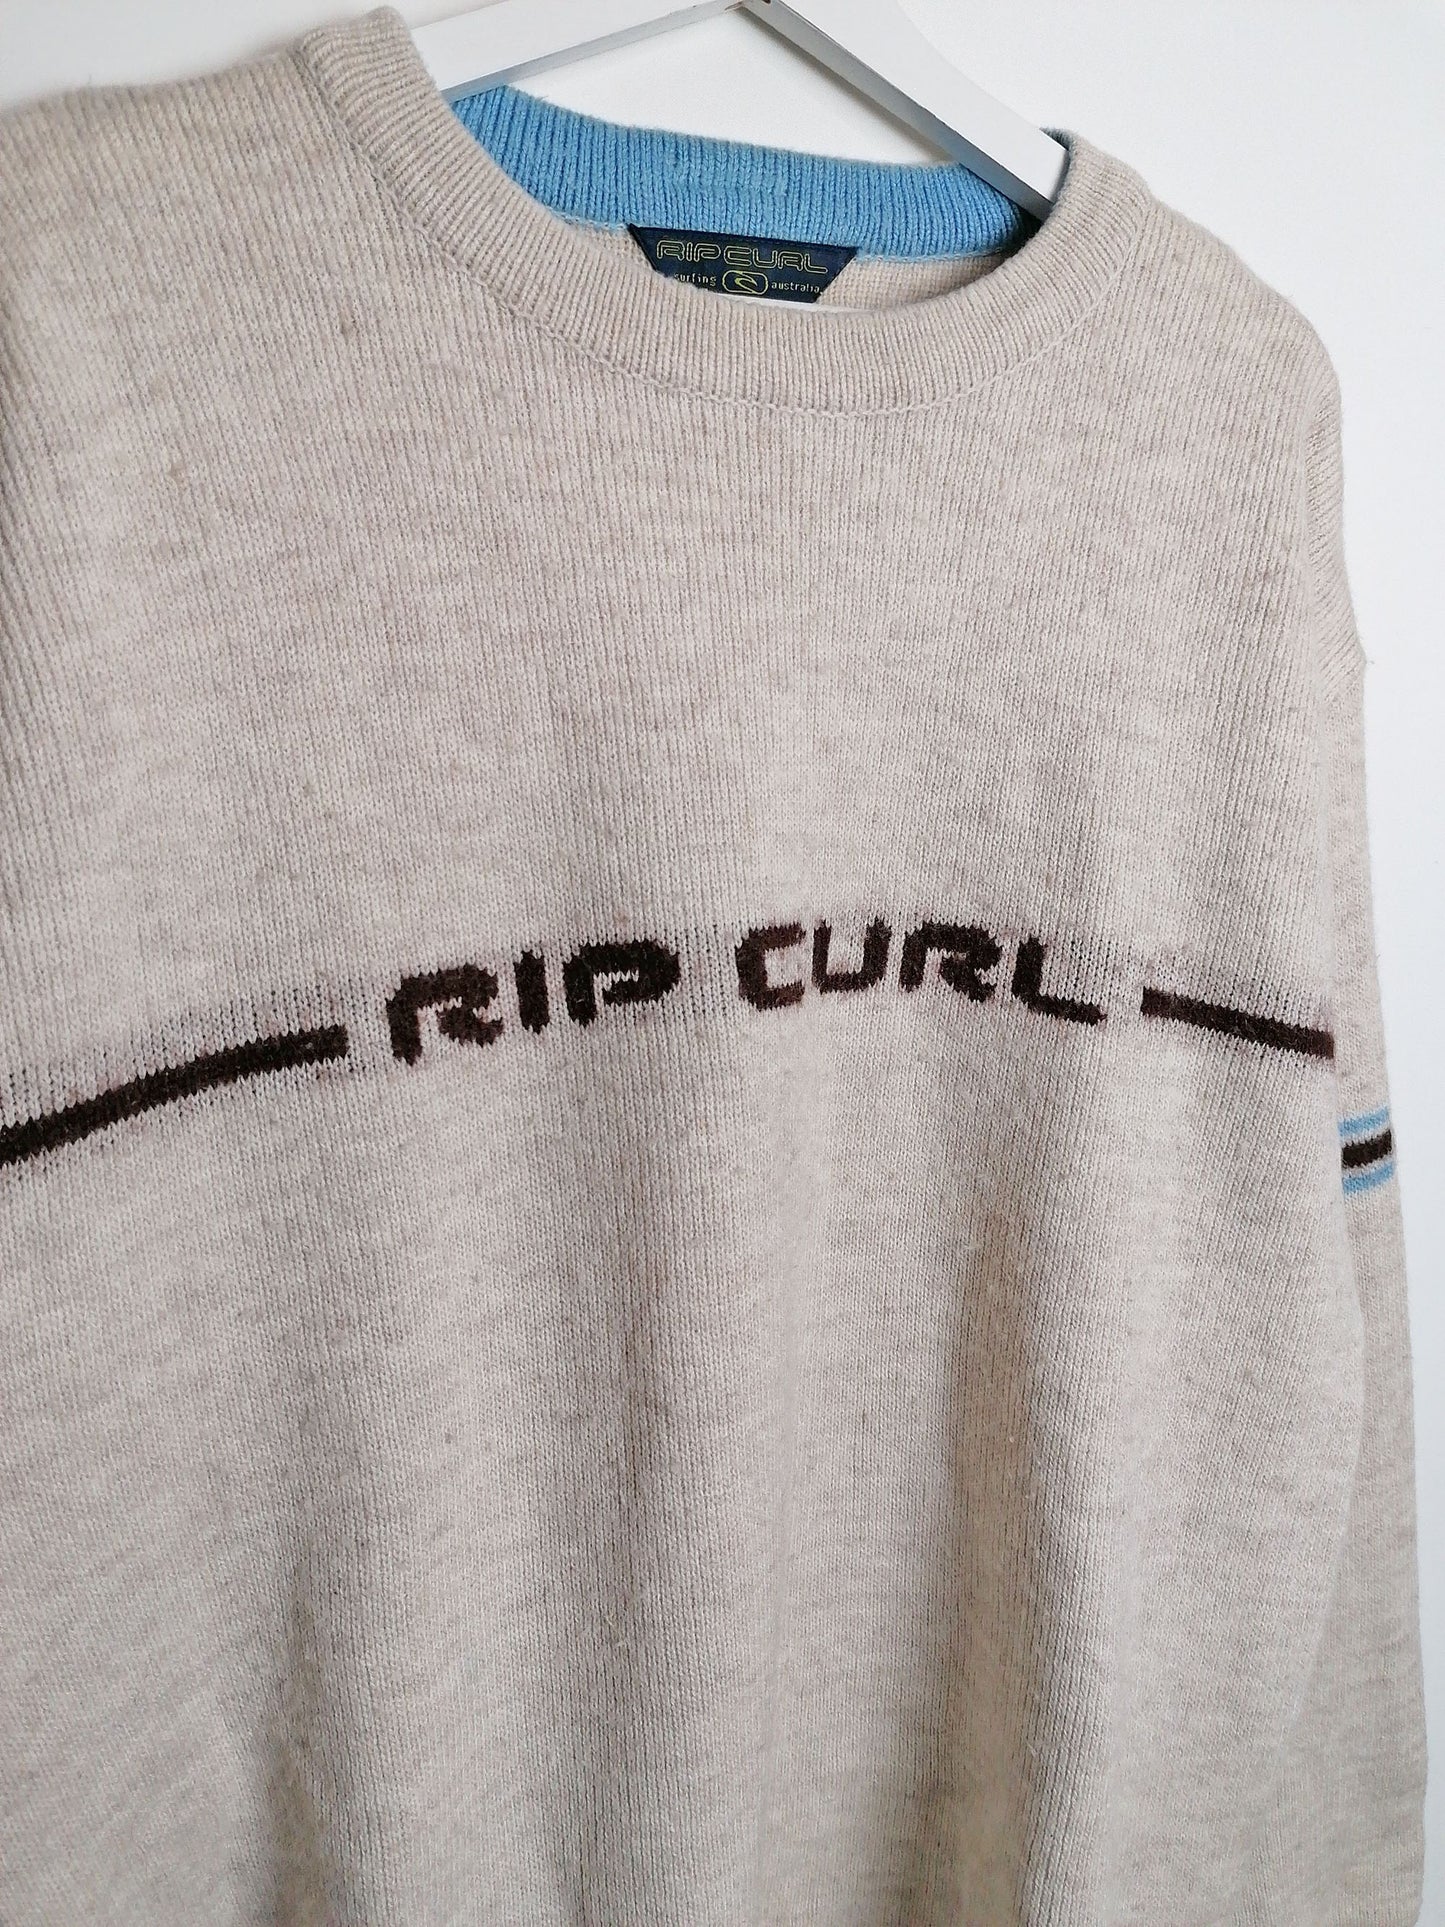 90's RIP CURL Wool Knit Ski Sweater - size L men